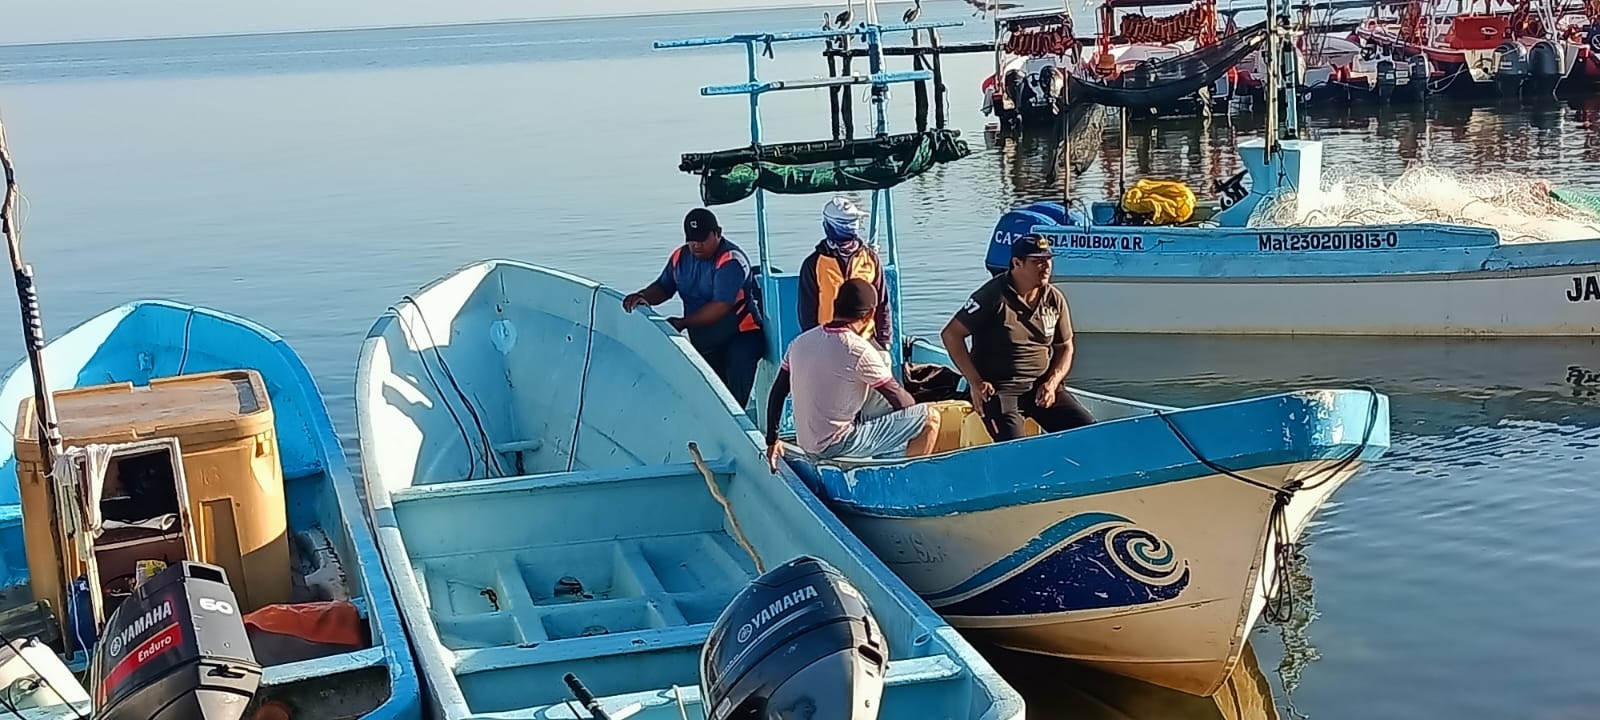 Localizan embarcación Ruth Selene tras nueve días desaparecida en Puerto de Chiquilá